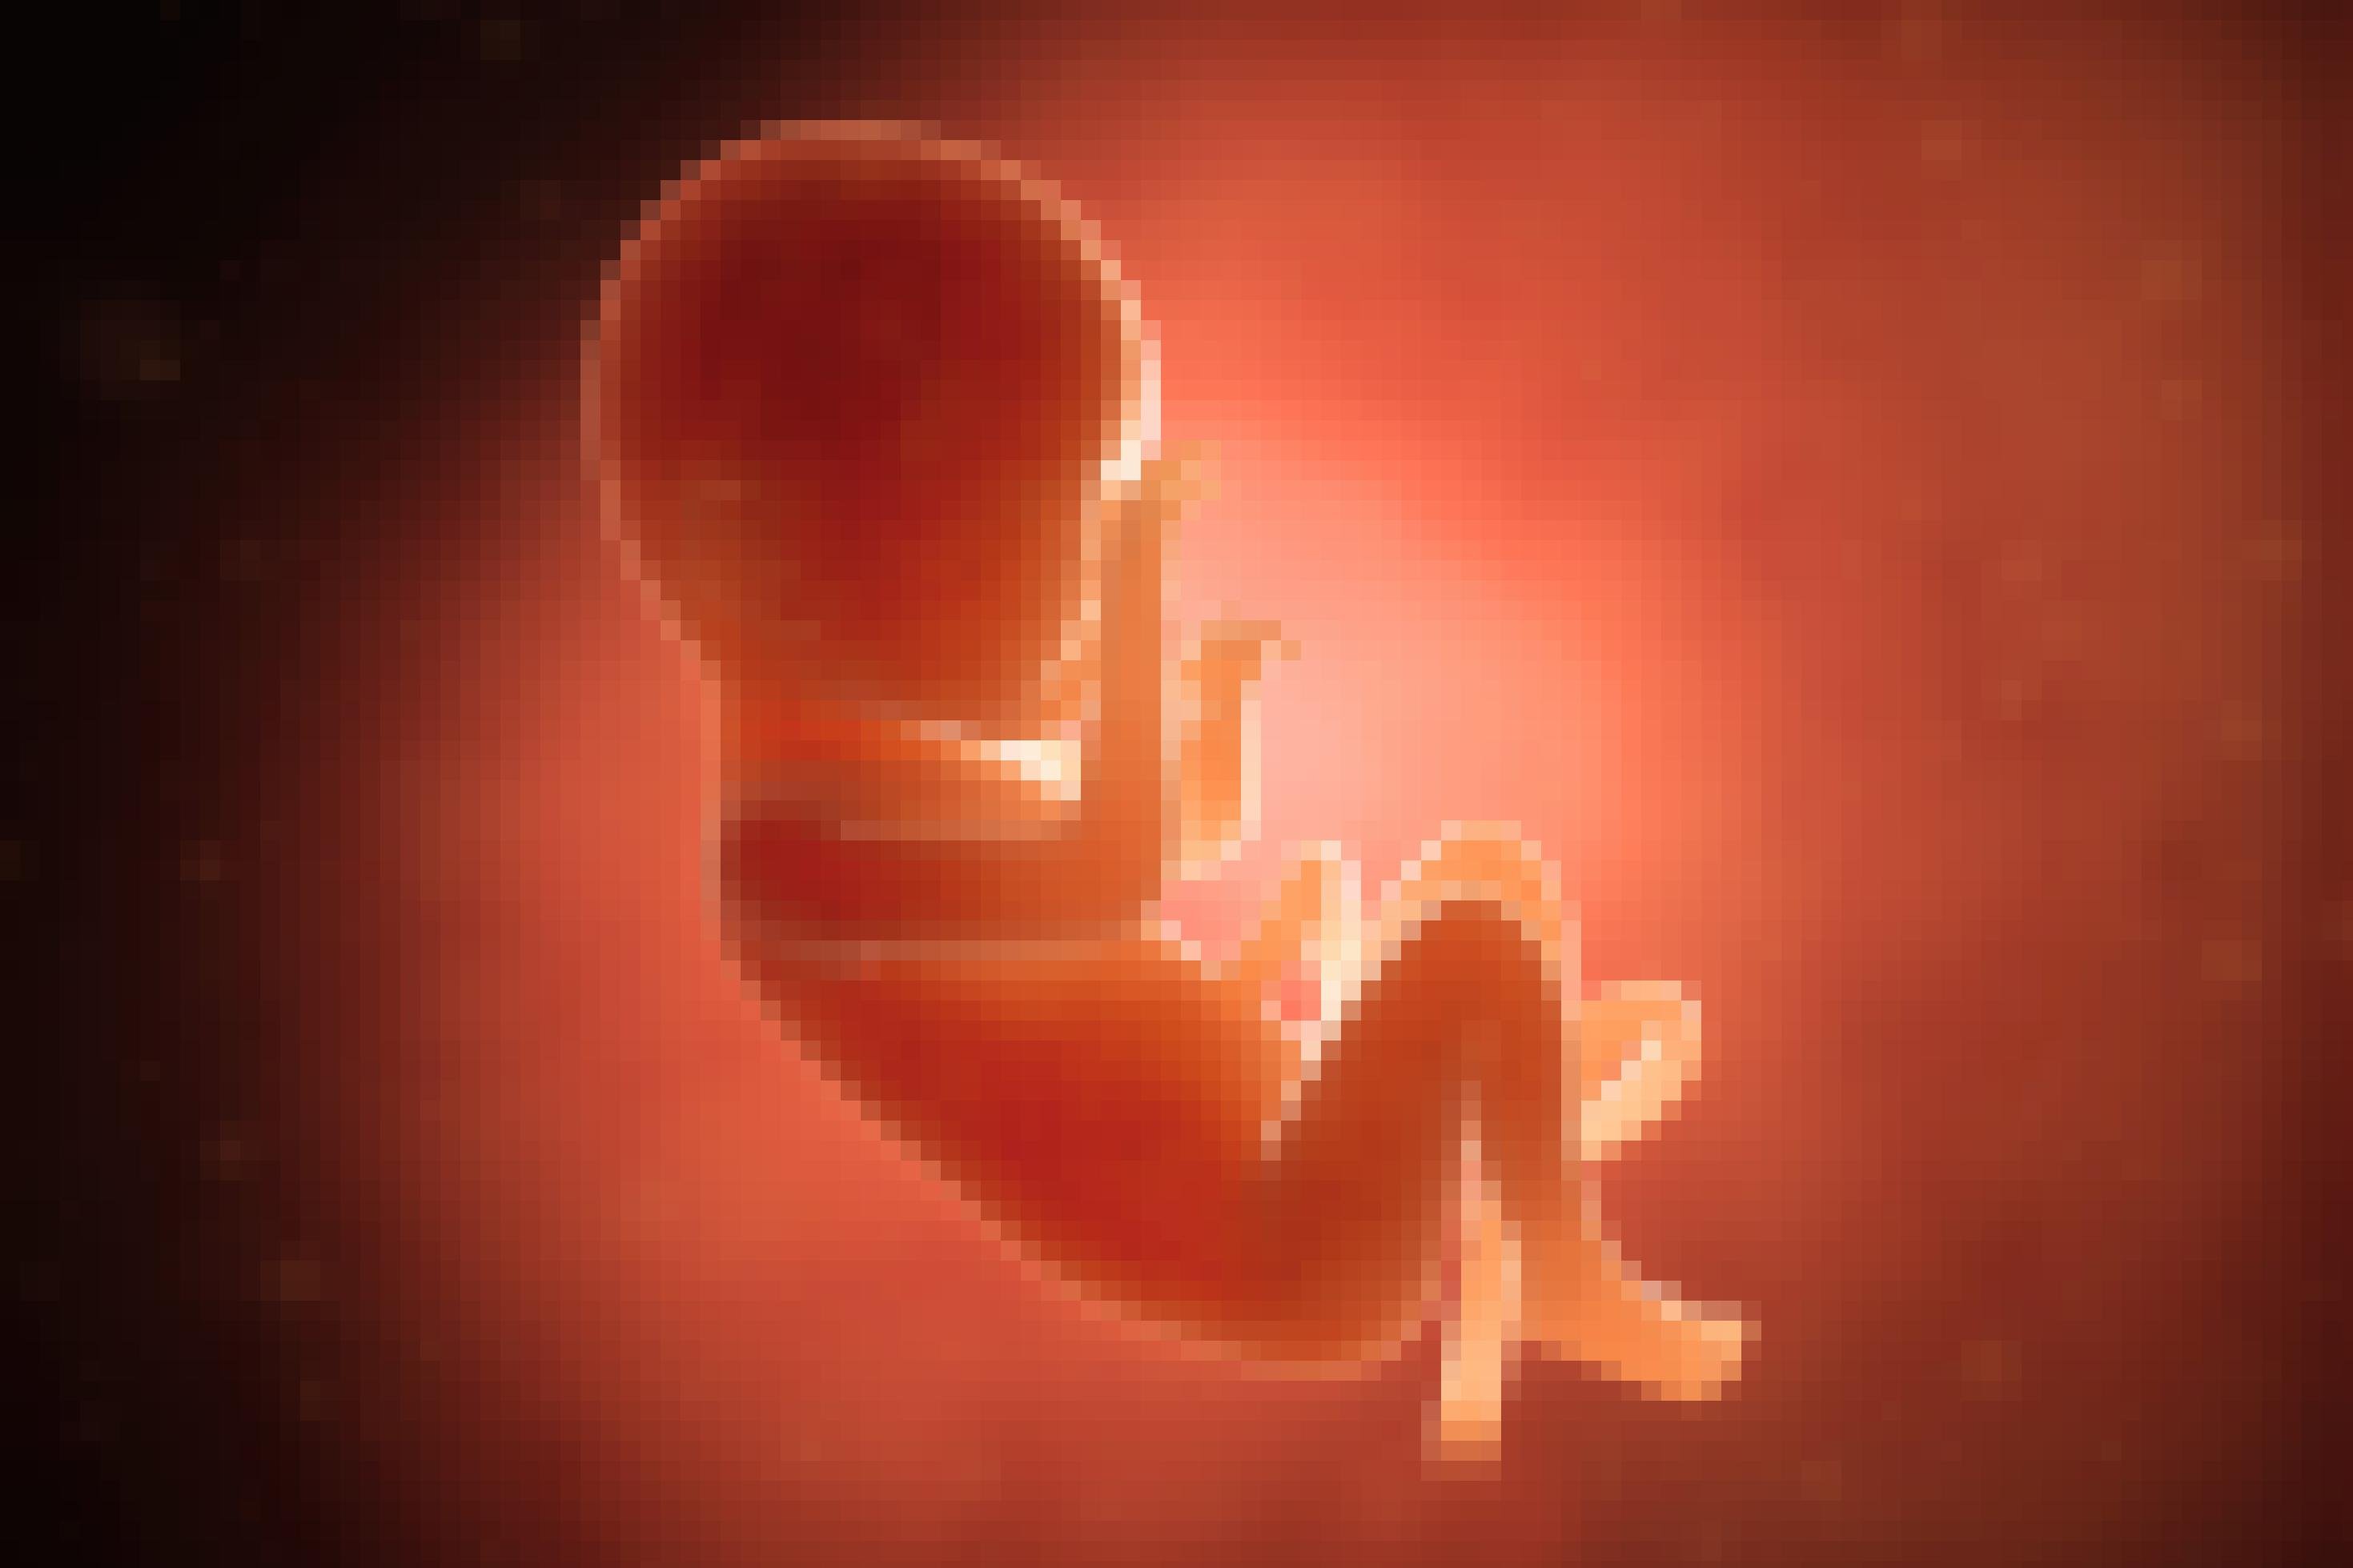 Die Illustration zeigt ein kleines Kind in orange-roten Farben, noch vor der Geburt im Mutterleib schwebend, die Ärmchen und Beinchen entspannt, Rücken und Kopf leicht eingekrümmt. Vom Nabel führt die Nabelschnur weg. Von rechts oben wird das Menschlein mit einer nicht sichtbaren Lichtquelle magisch angestrahlt.